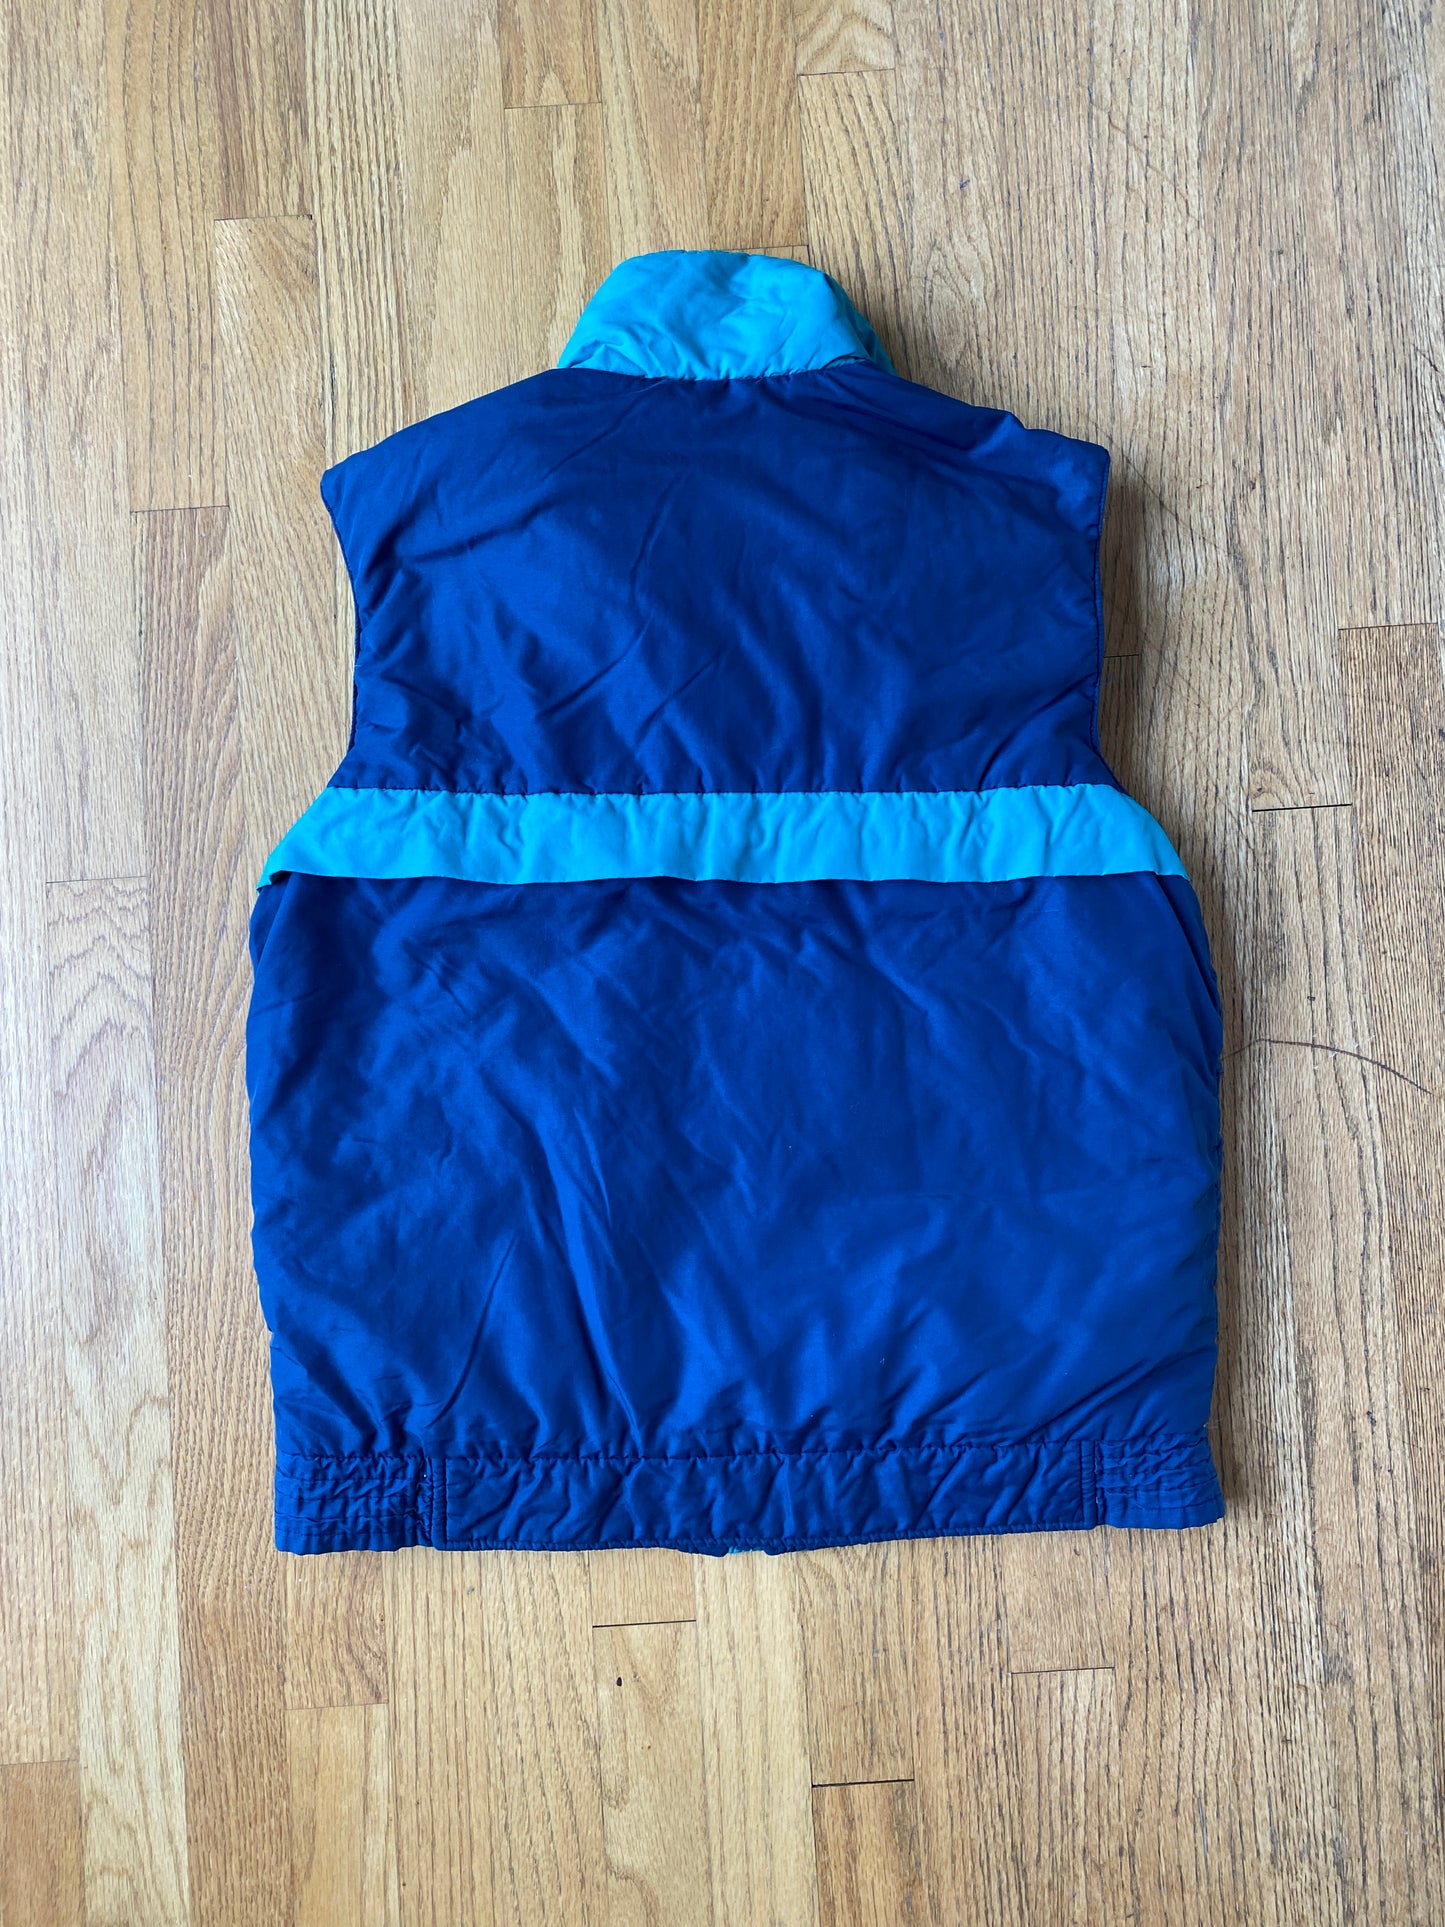 Vintage Cool Blue Puffer Vest (M)